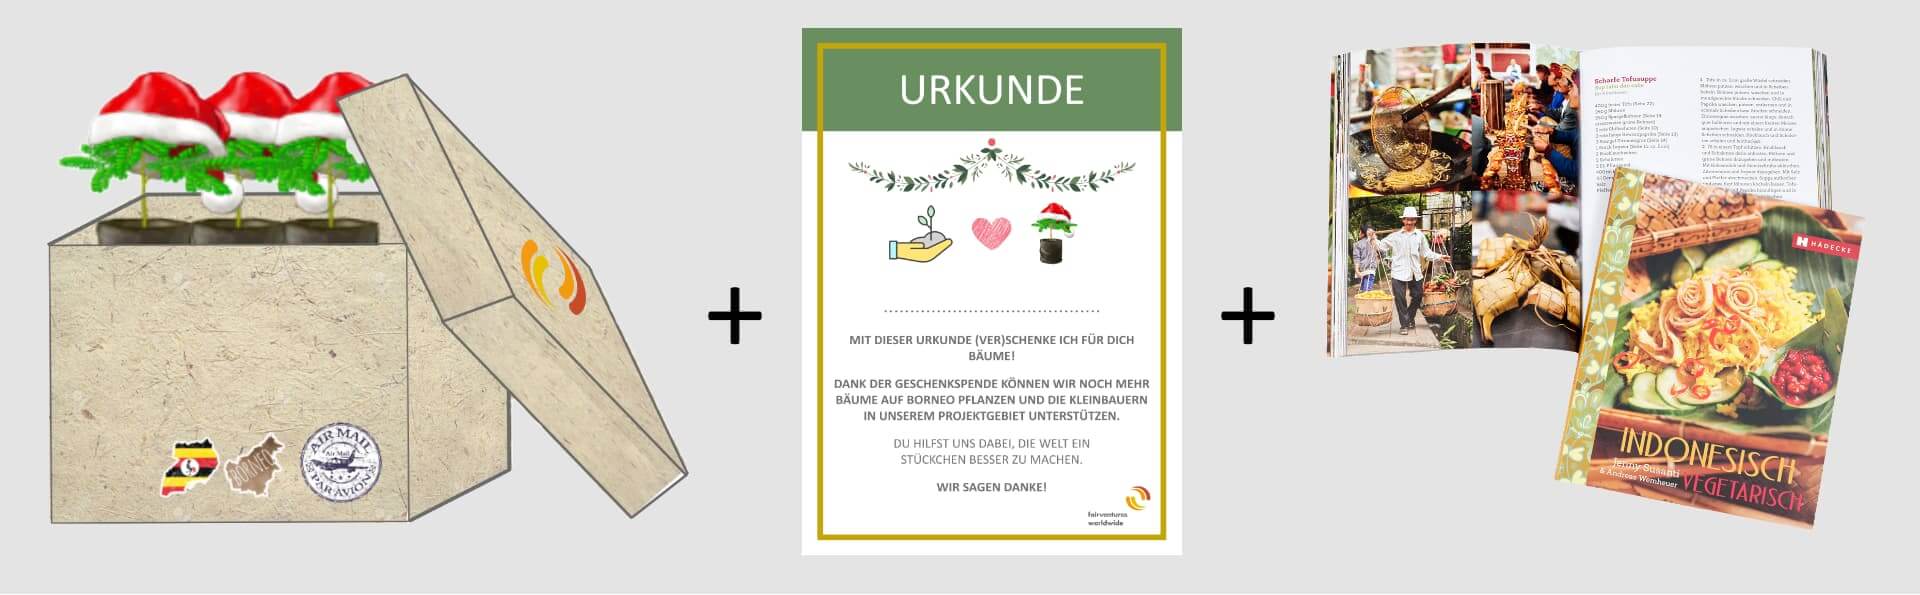 Adventskalender: Geschenkideen: Baum-Urkunde, indonesisches Kochbuch